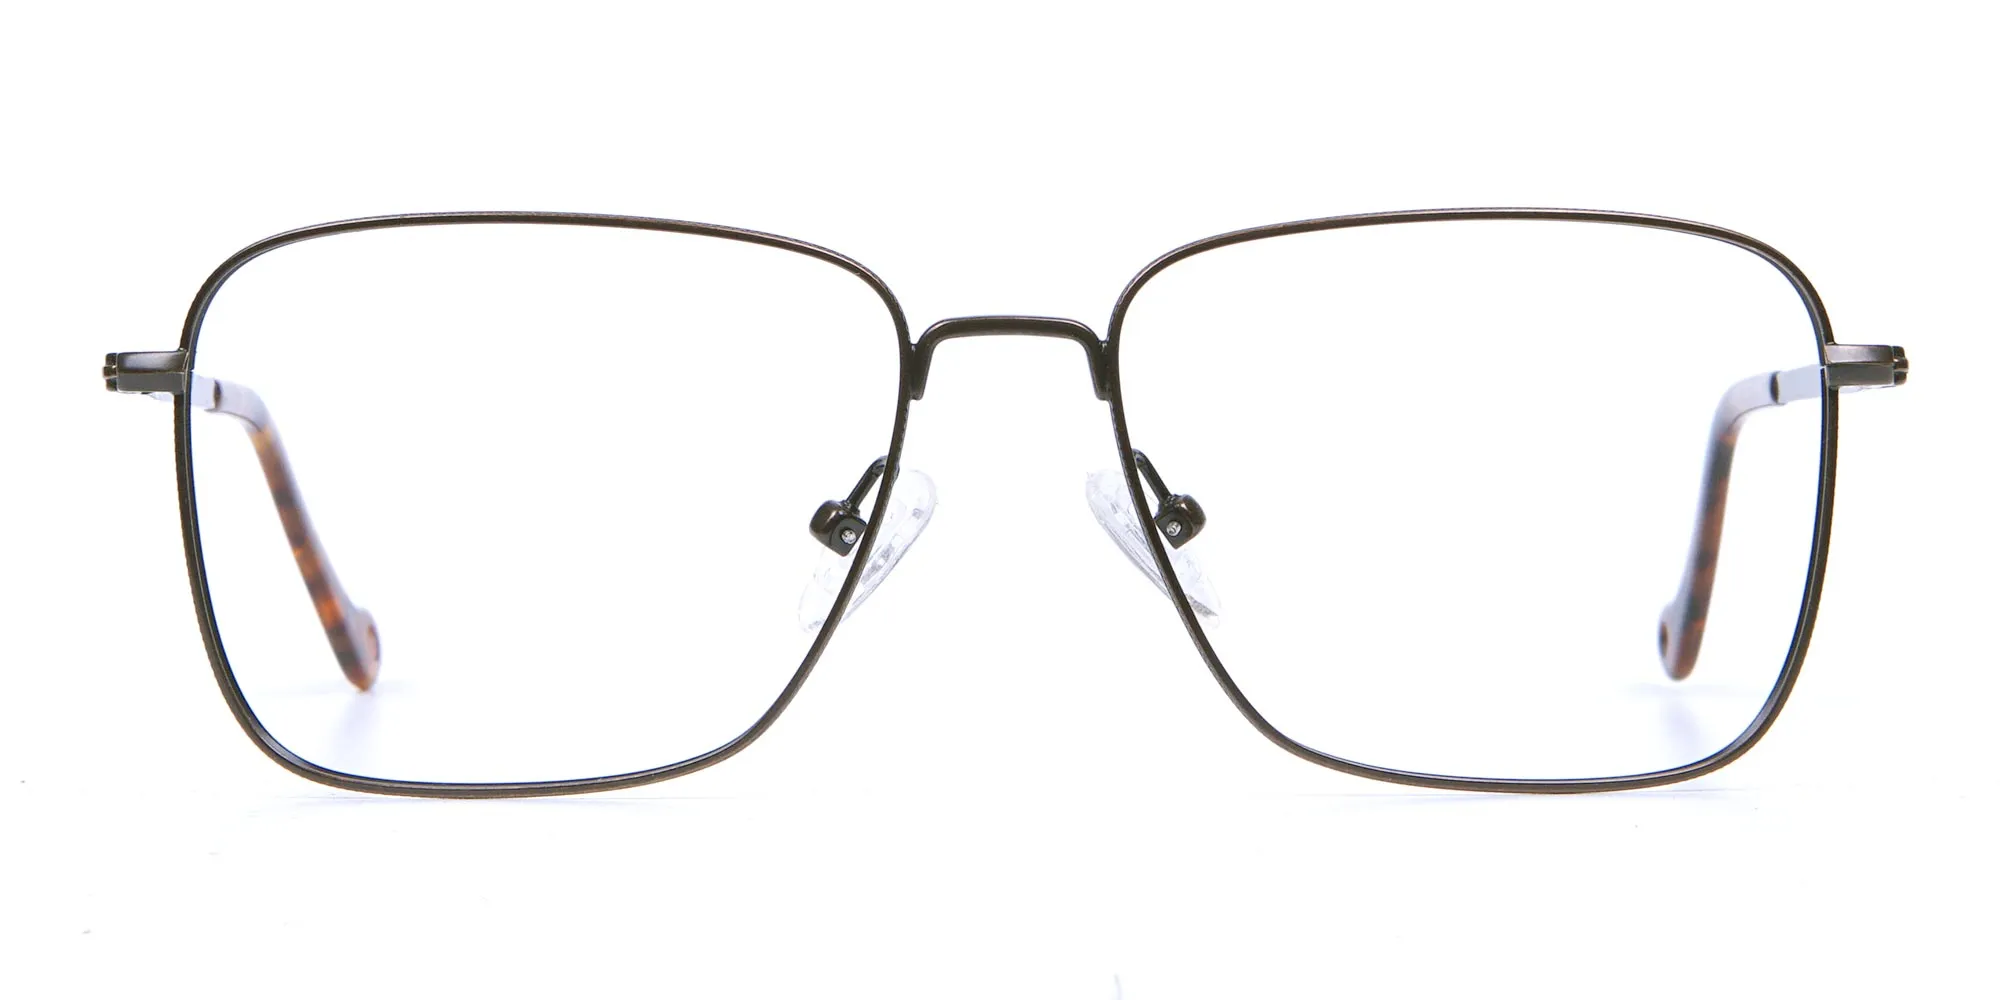 Brown Tortoiseshell Rectangular Glasses